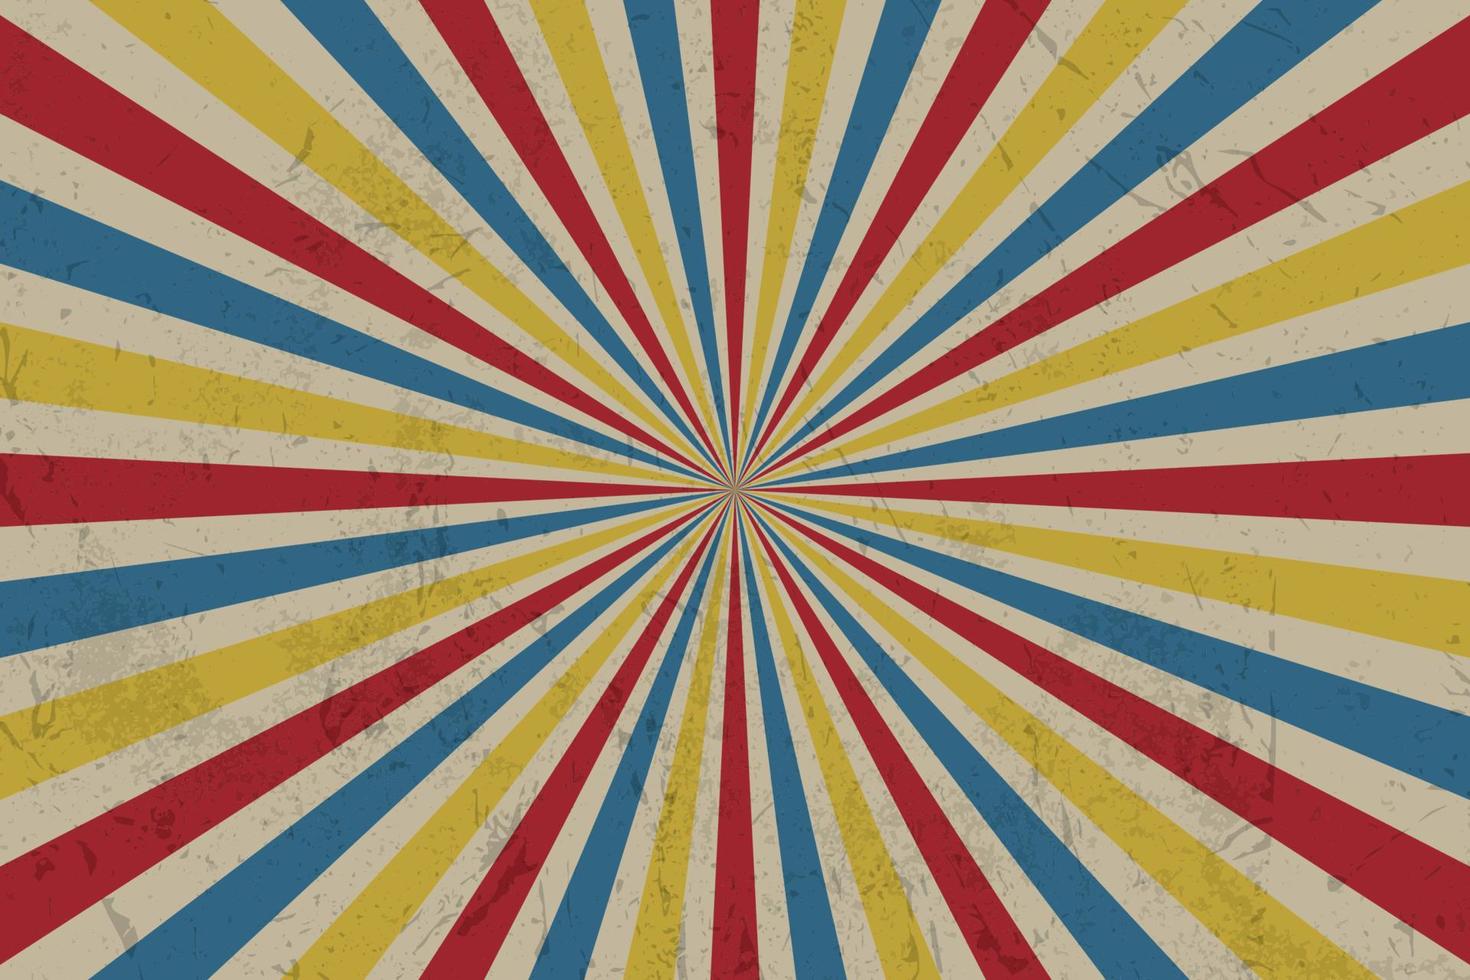 abstracte kleurrijke vintage stijl achtergrond met rood geel en blauw, twirl patroon. vectorillustratie. vector